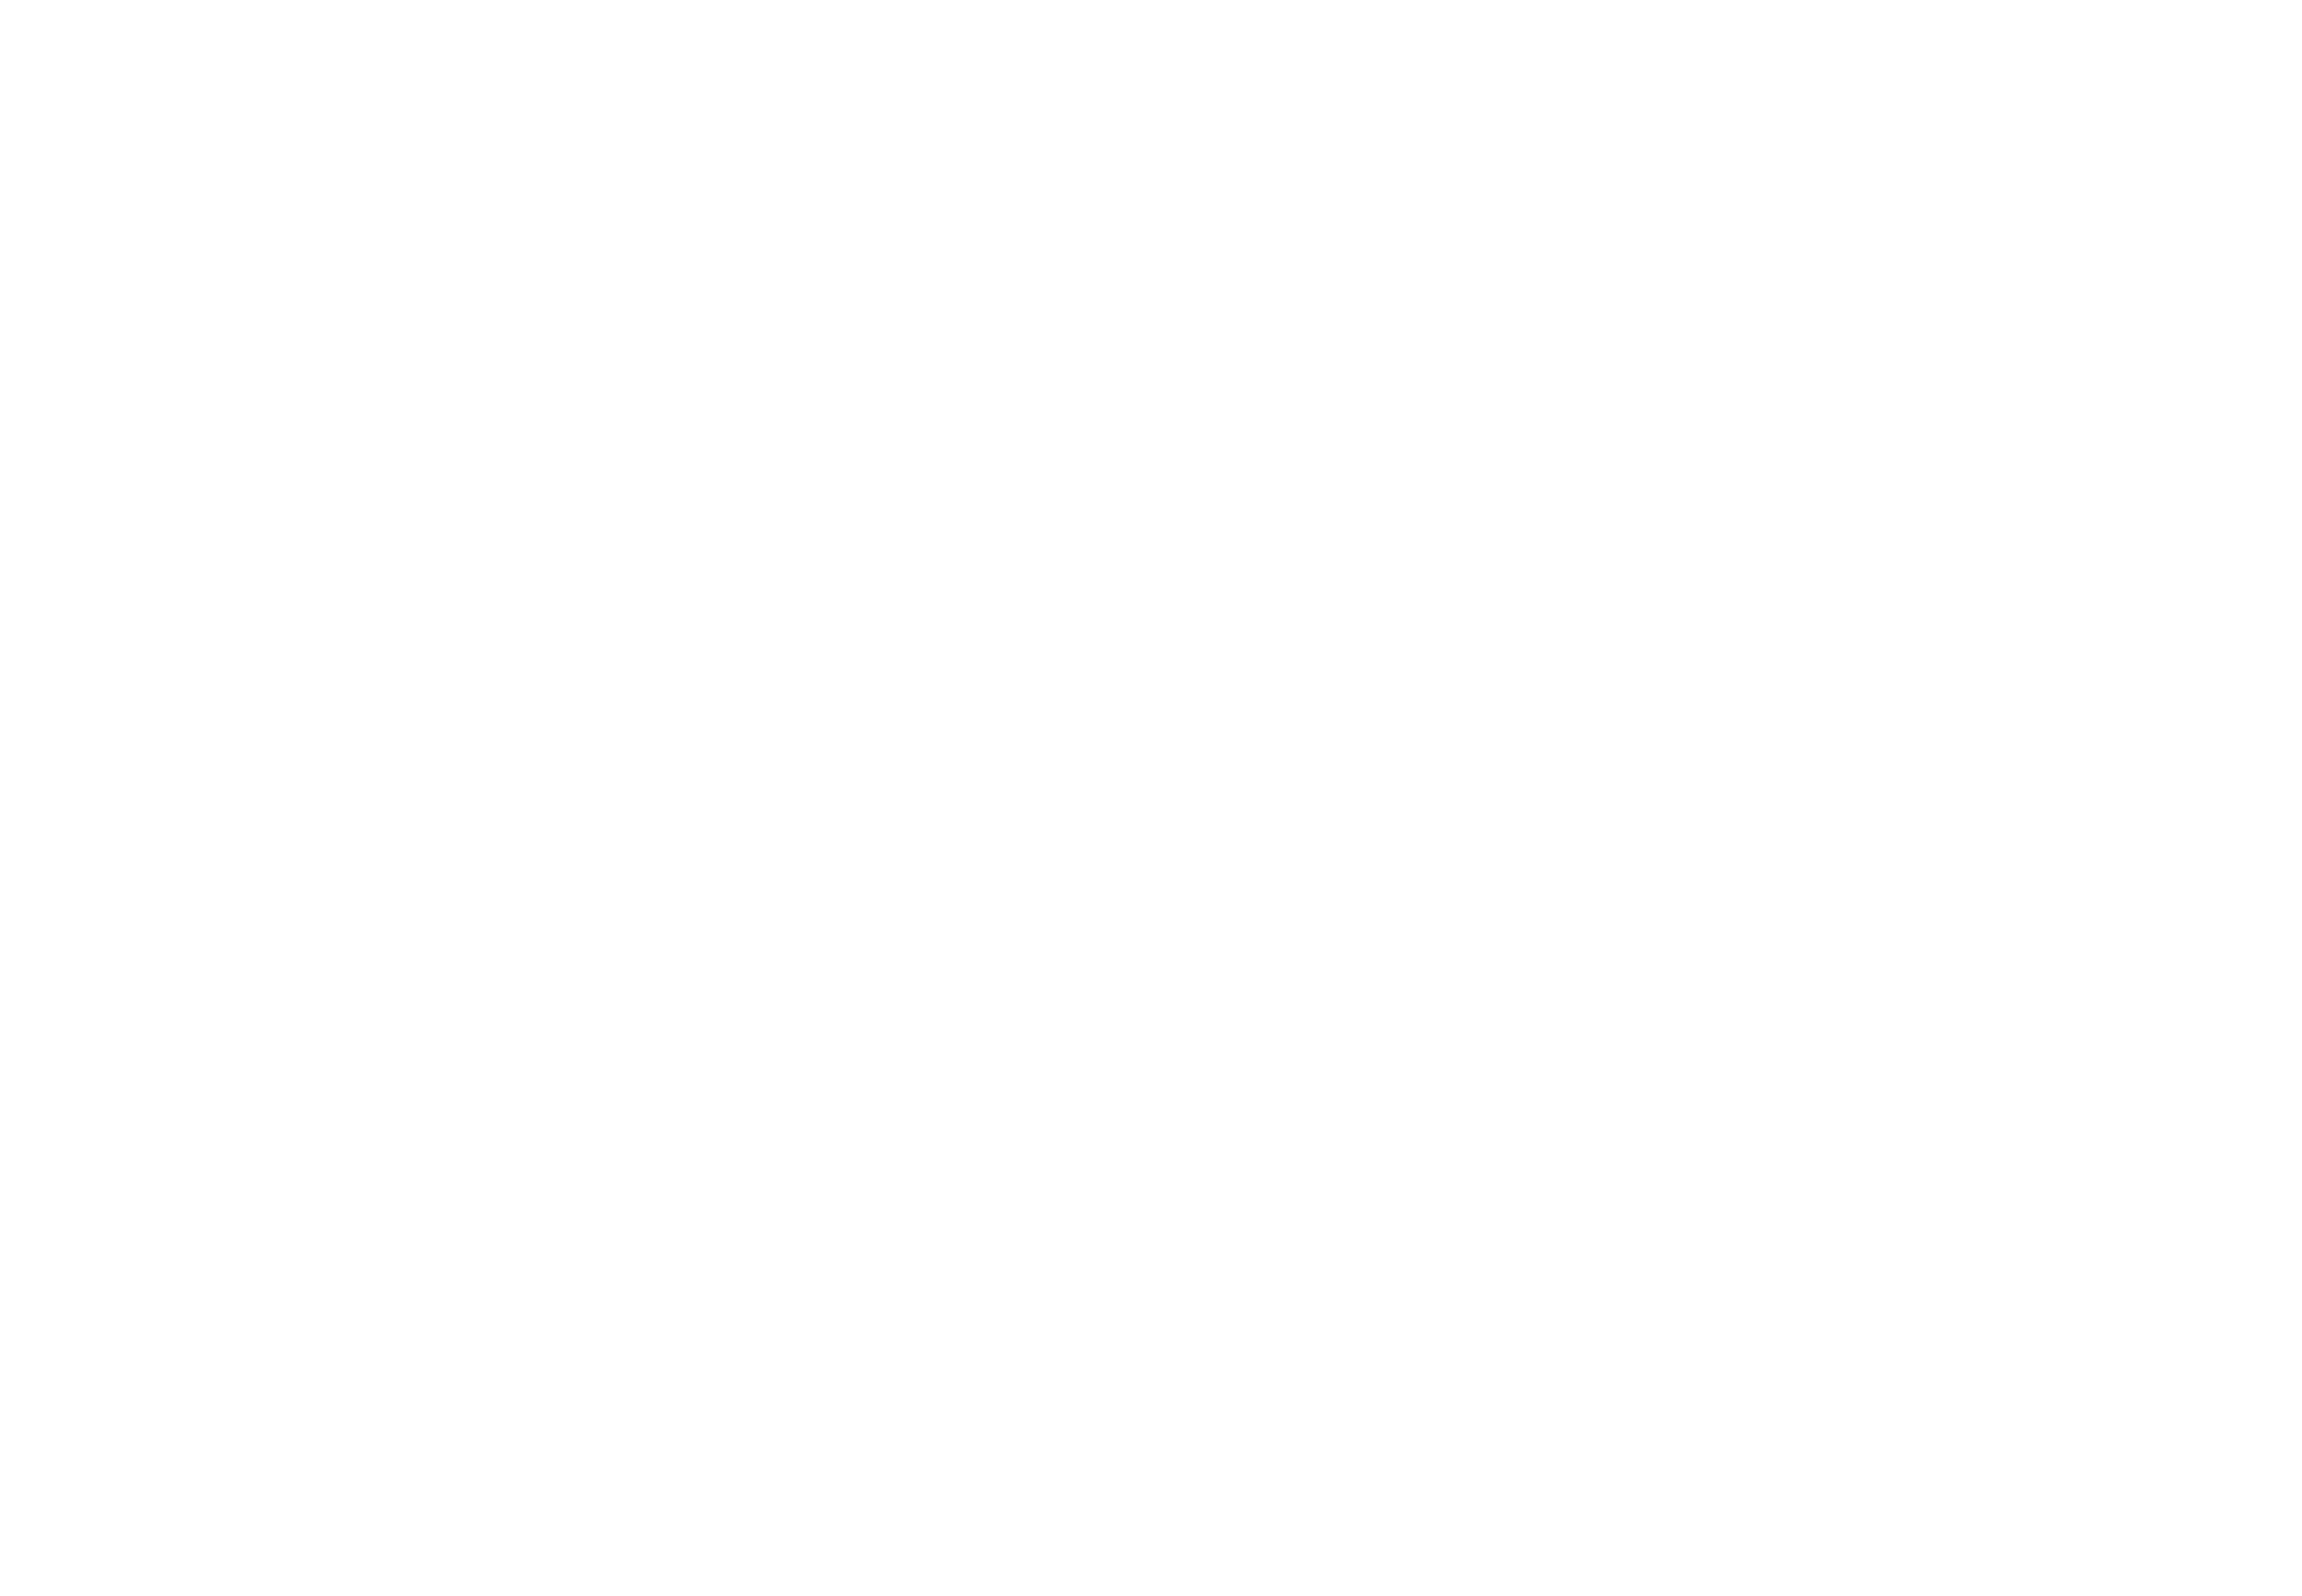 insubria_classic_rally_logo